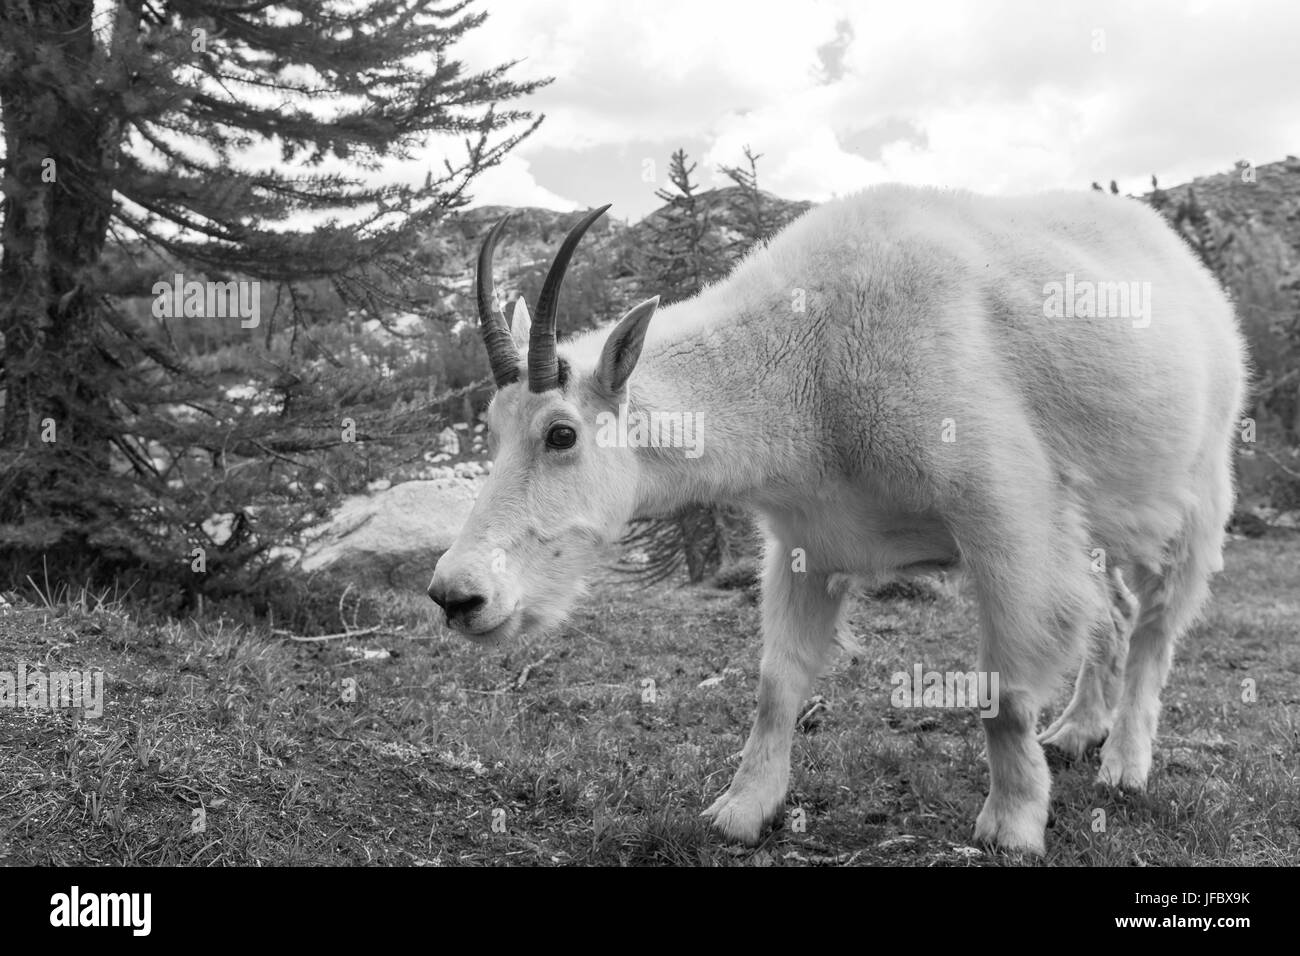 Mountain goat Stock Photo